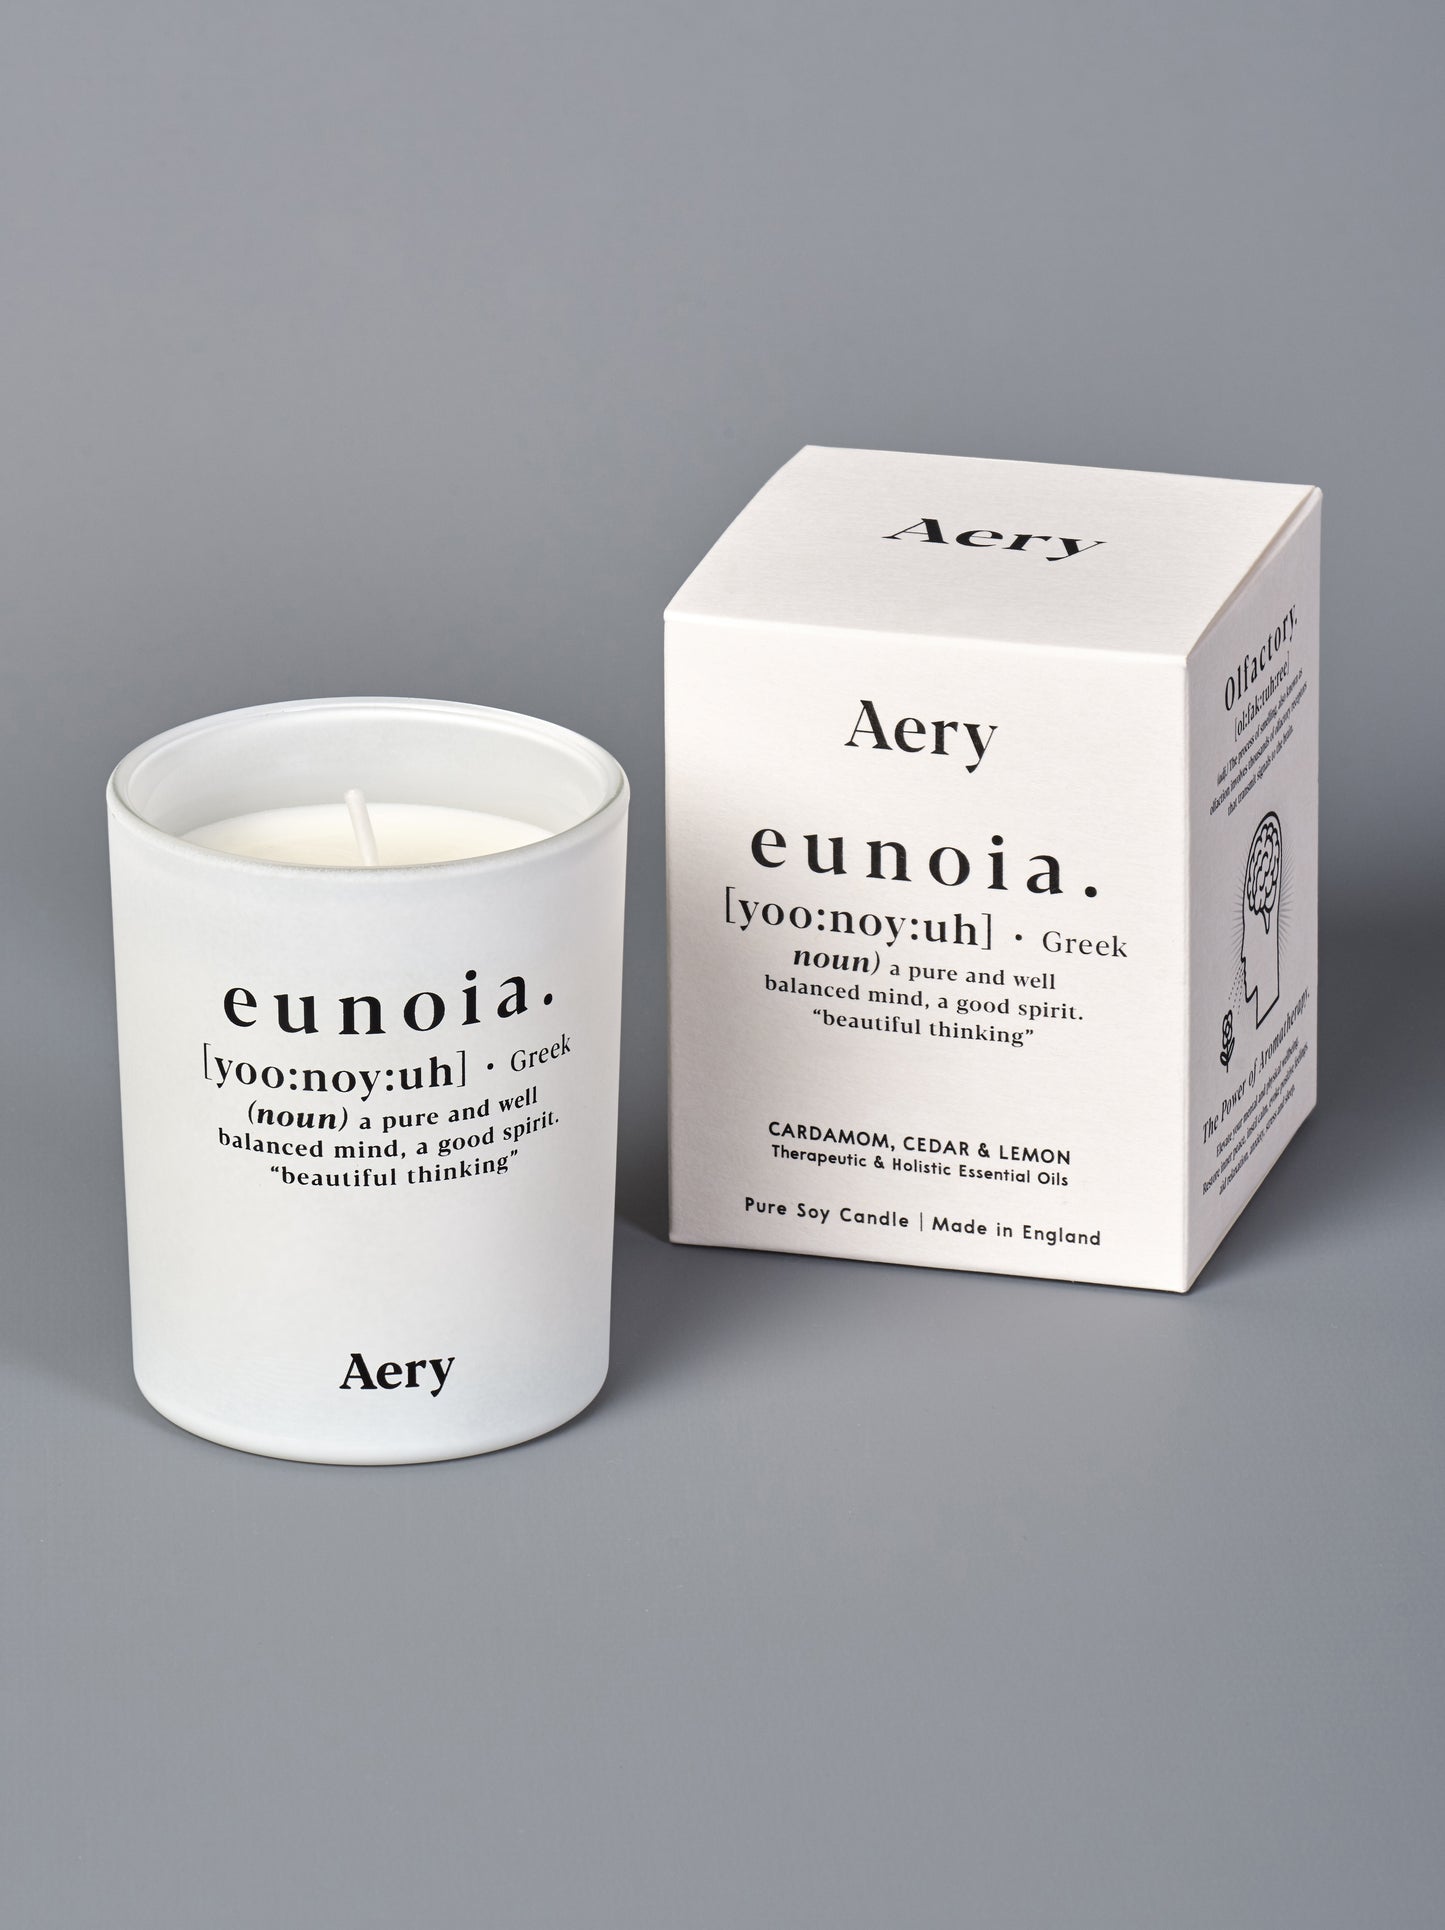 Aery Eunoia candle- Cardamon cedar and Lemon